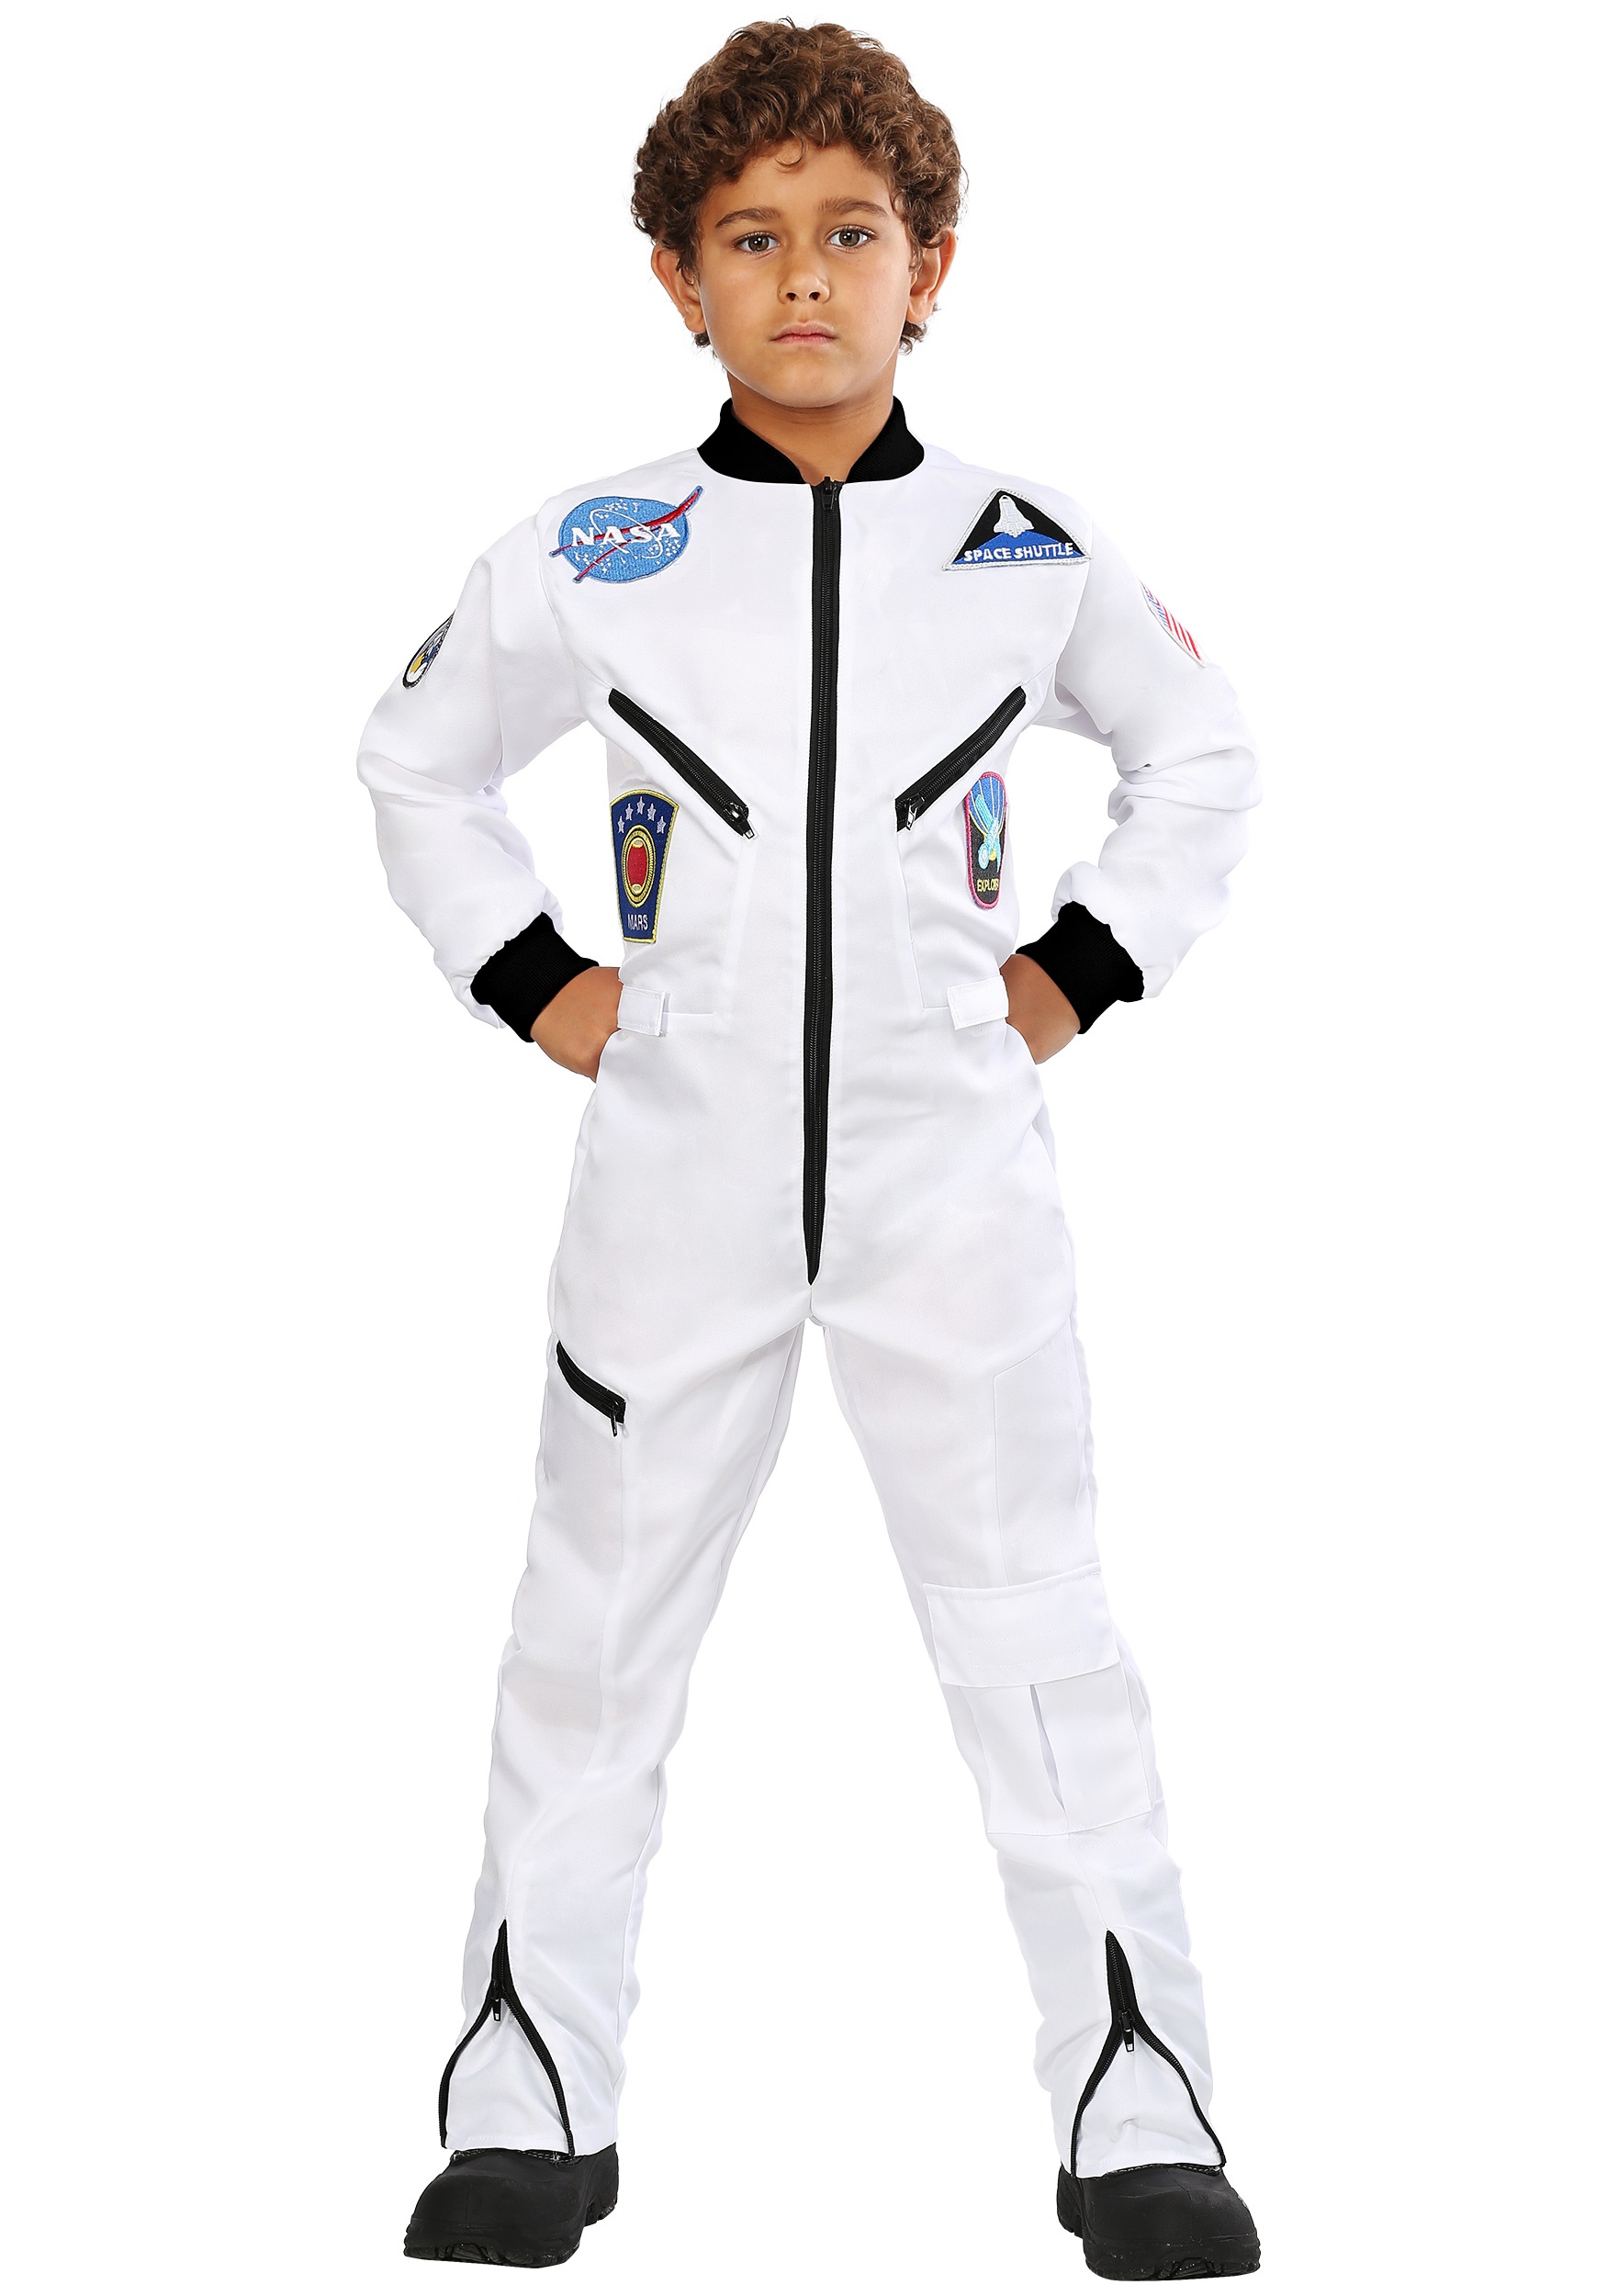 Astronaut Jumpsuit Costume for Children